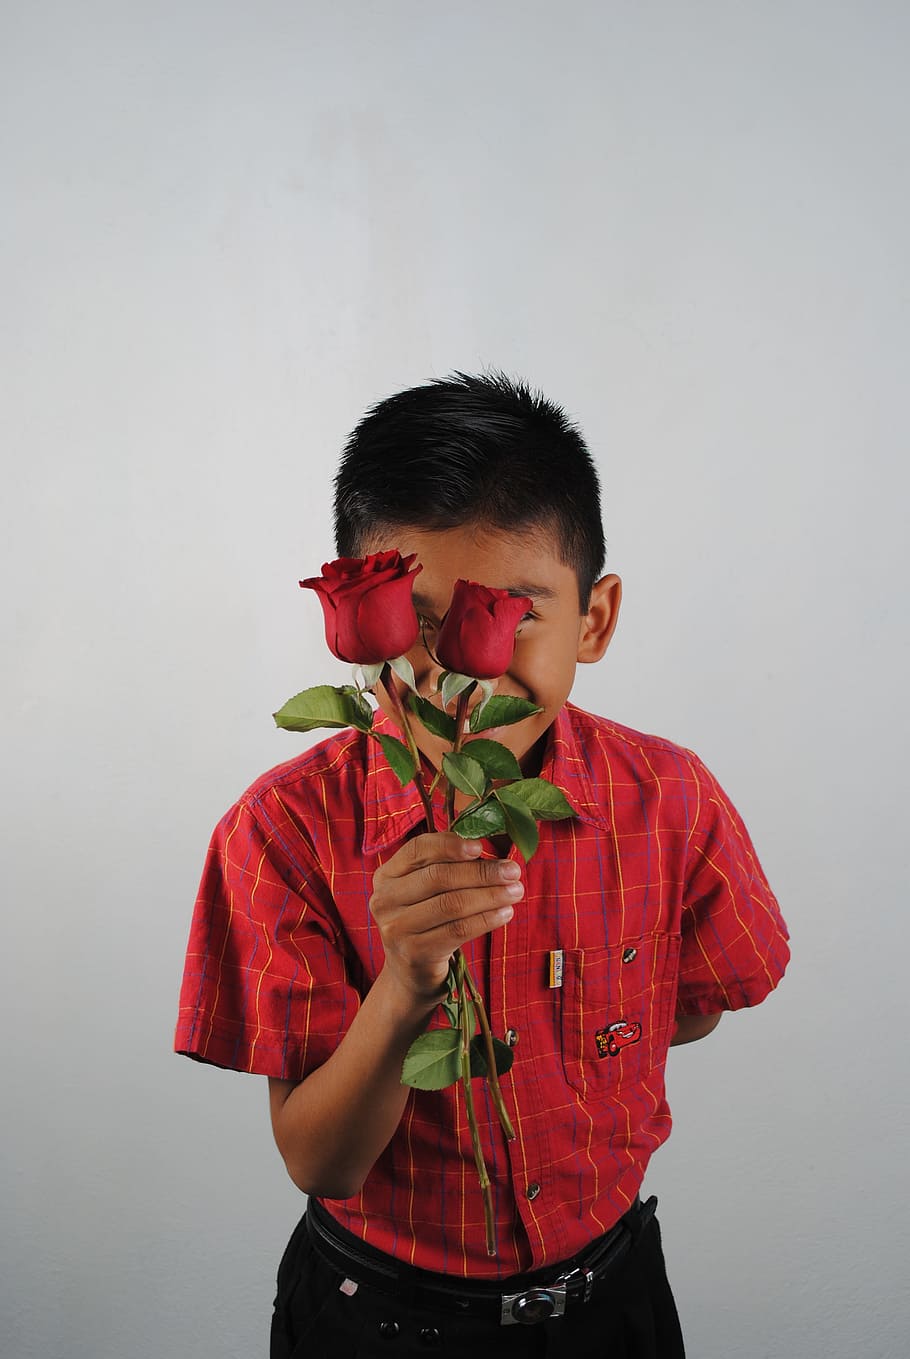 mawar merah, merah, anak, satu orang, anak laki-laki, tampilan depan, masa kanak-kanak, berdiri, di dalam ruangan, pakaian santai